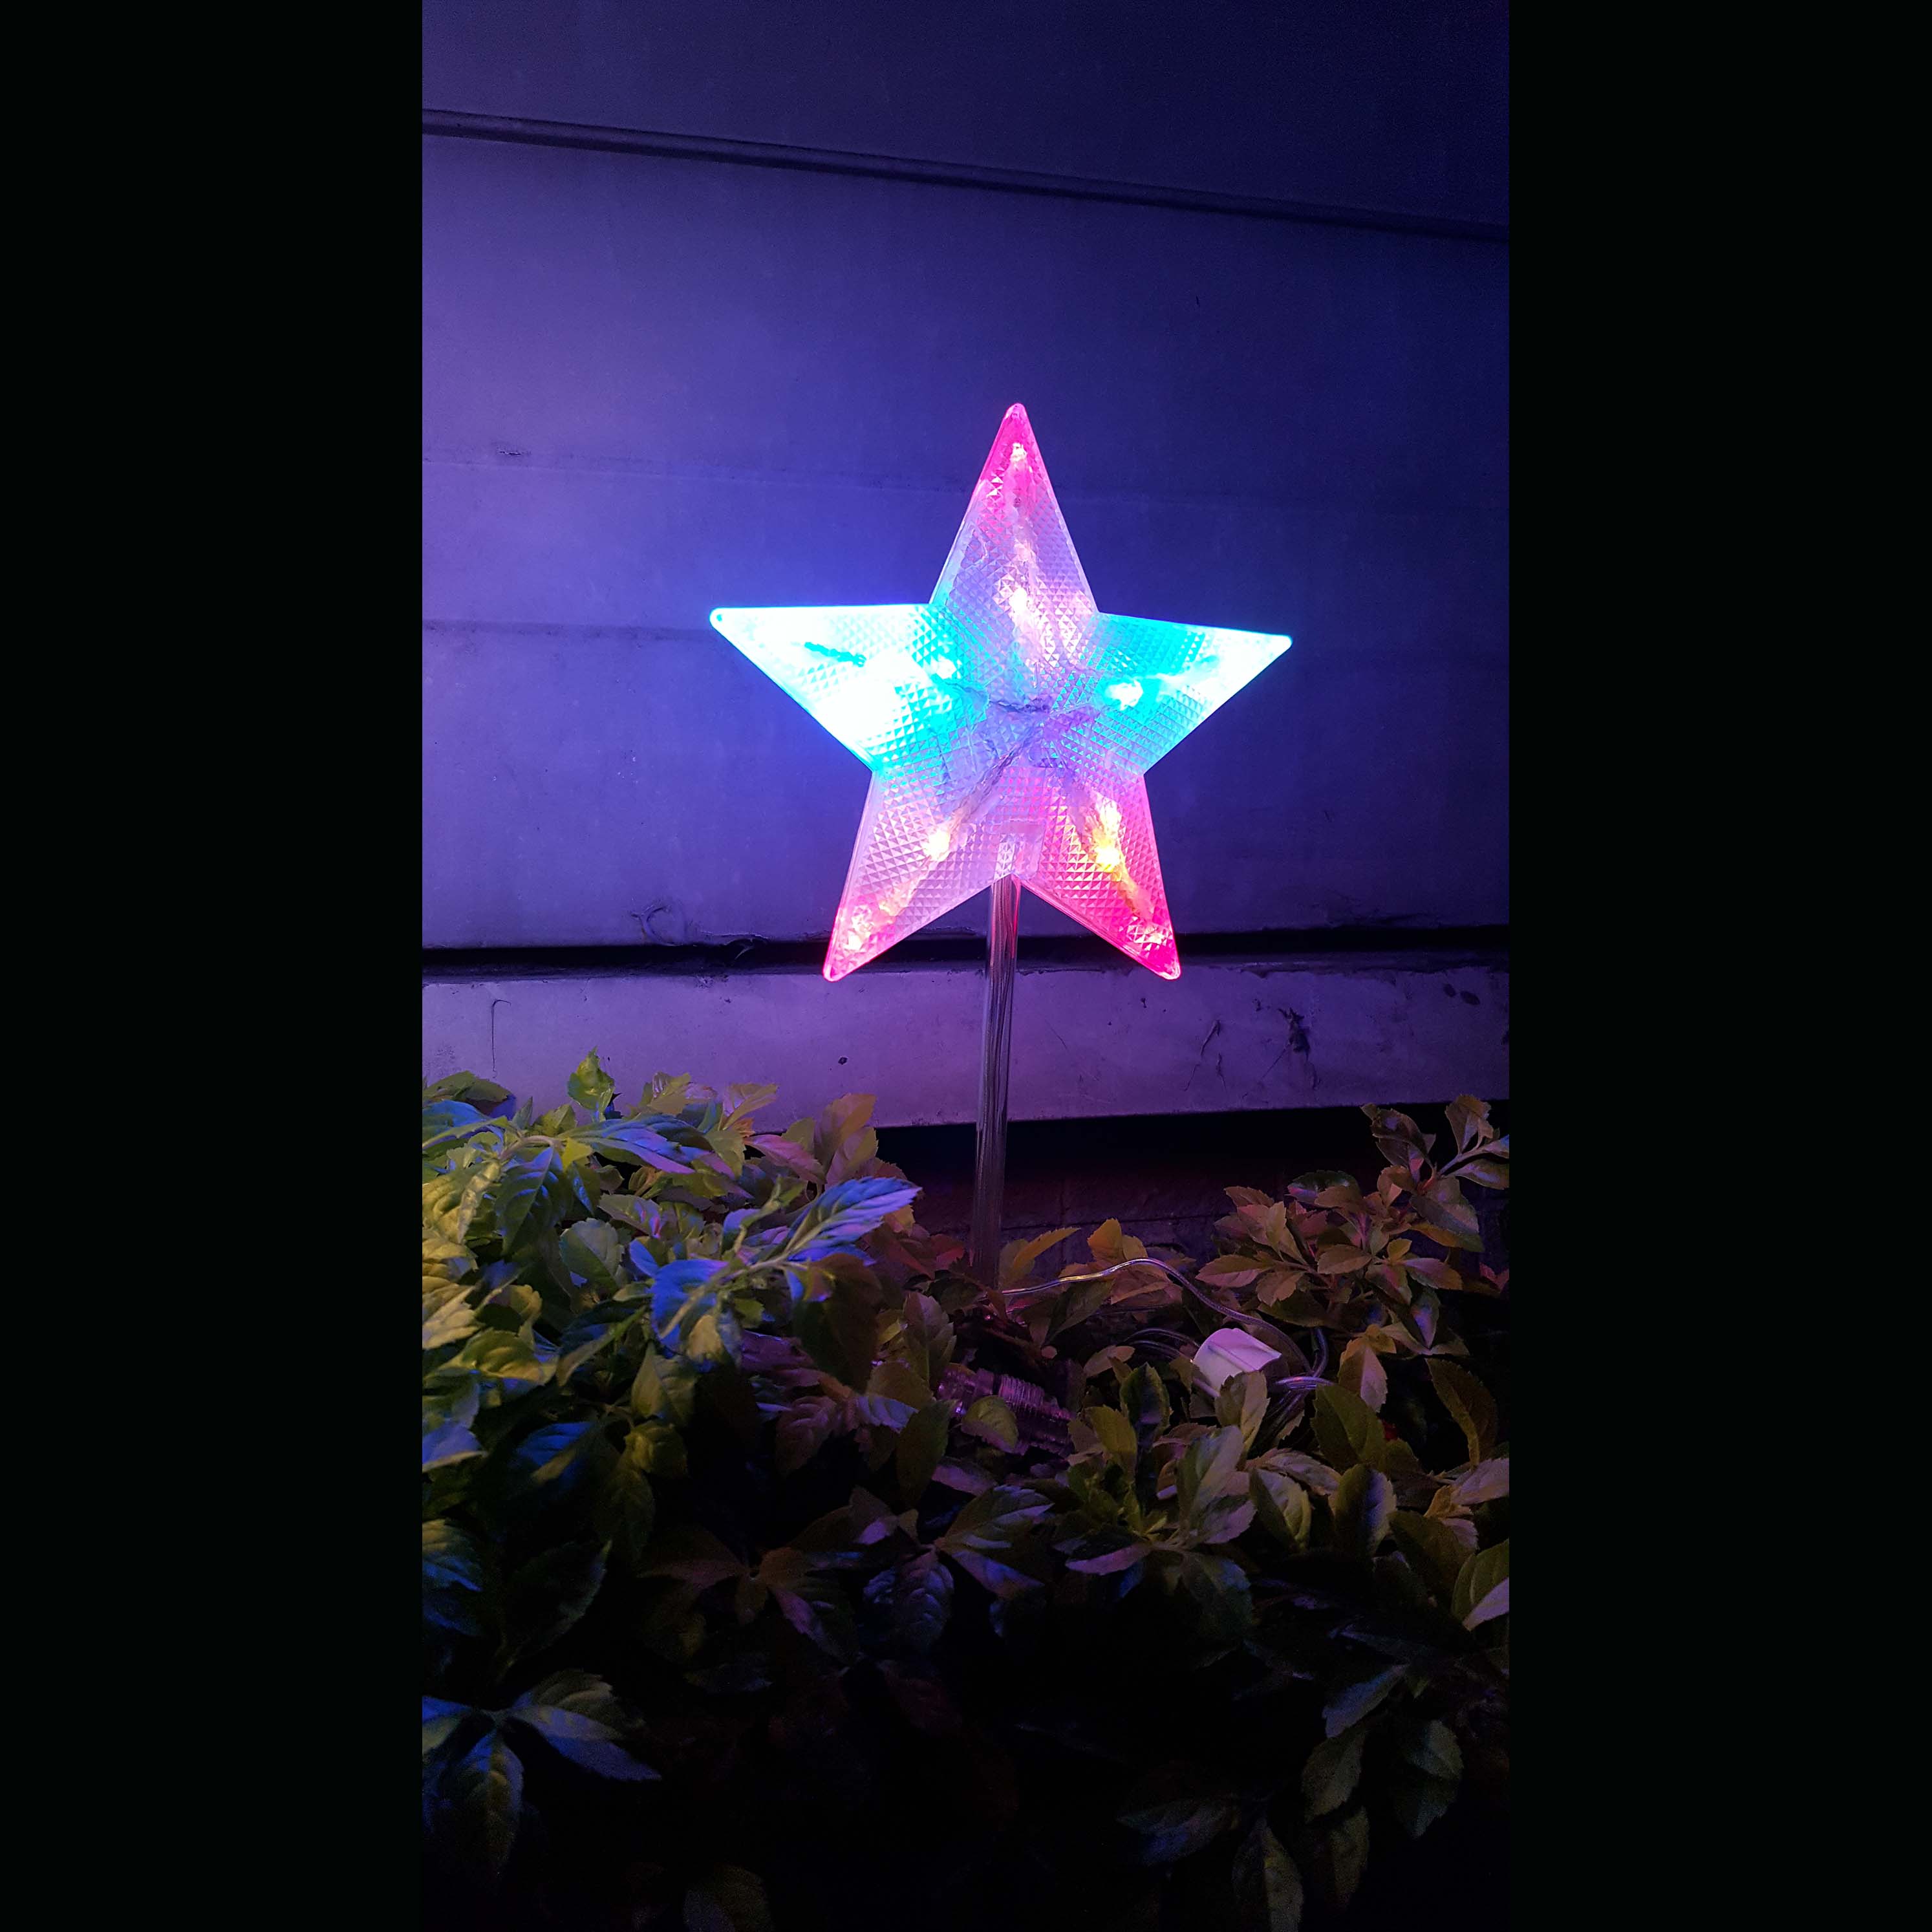 3D星星樹頂插土燈 - 彩光